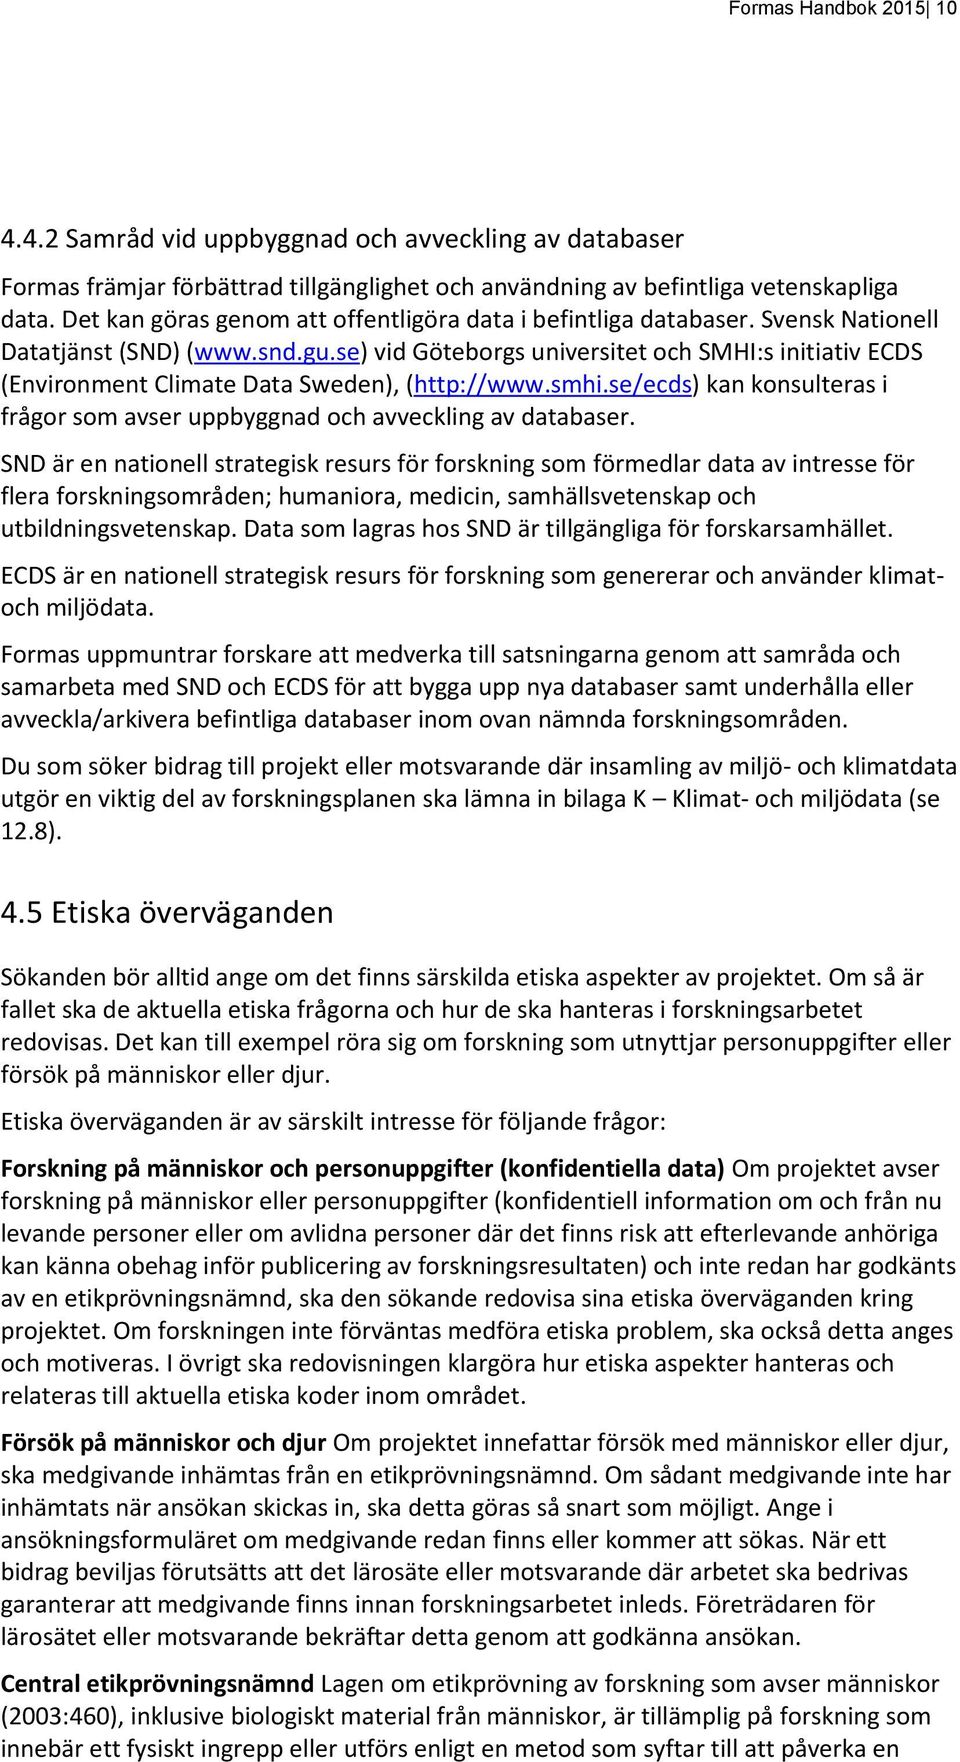 se) vid Göteborgs universitet och SMHI:s initiativ ECDS (Environment Climate Data Sweden), (http://www.smhi.se/ecds) kan konsulteras i frågor som avser uppbyggnad och avveckling av databaser.